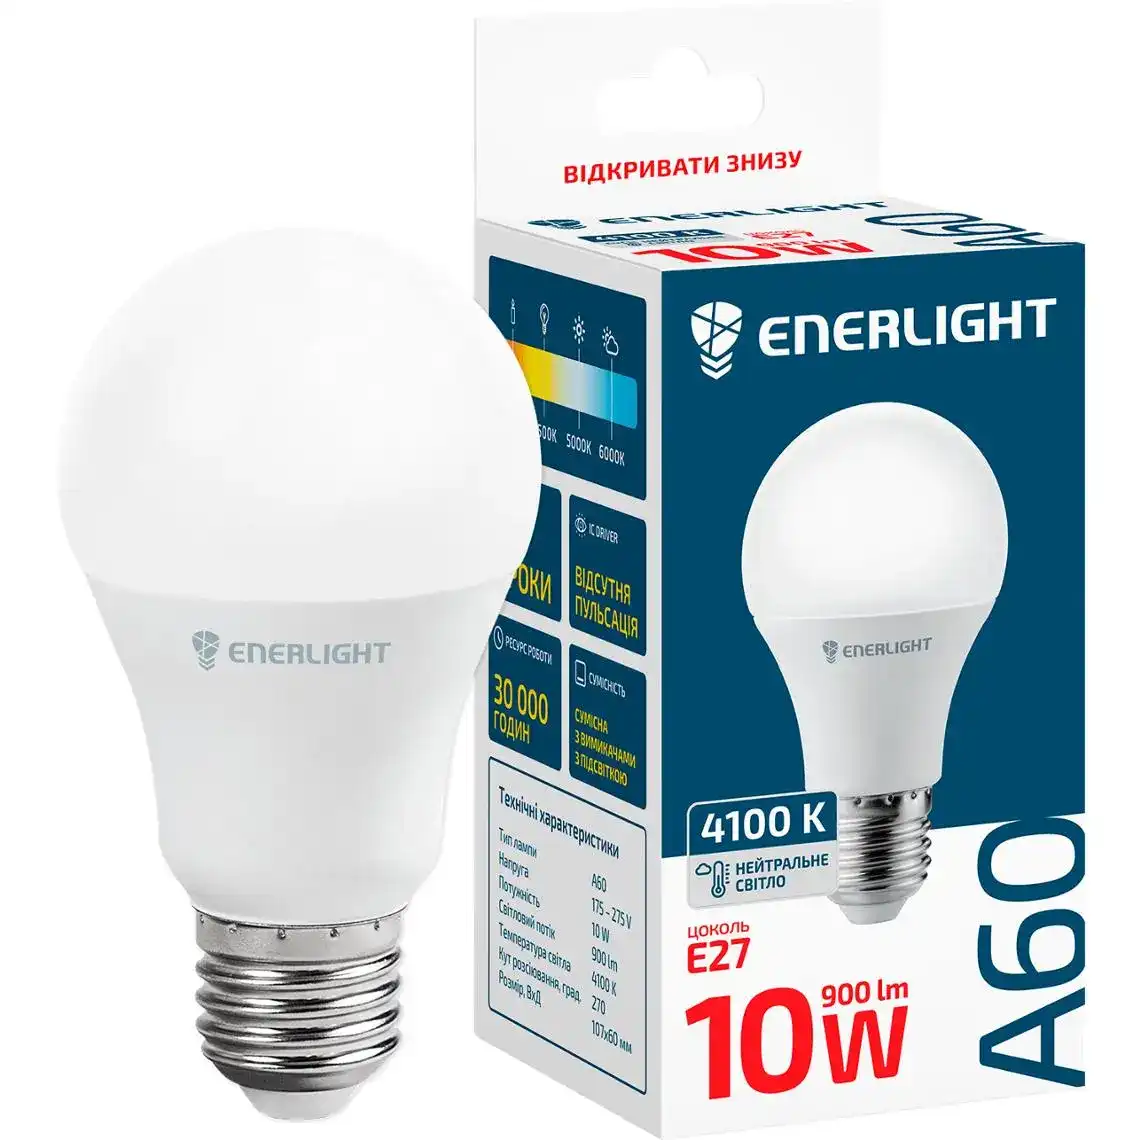 Светодиодная лампа LED Enerlight LED A60 10W 4100K E27